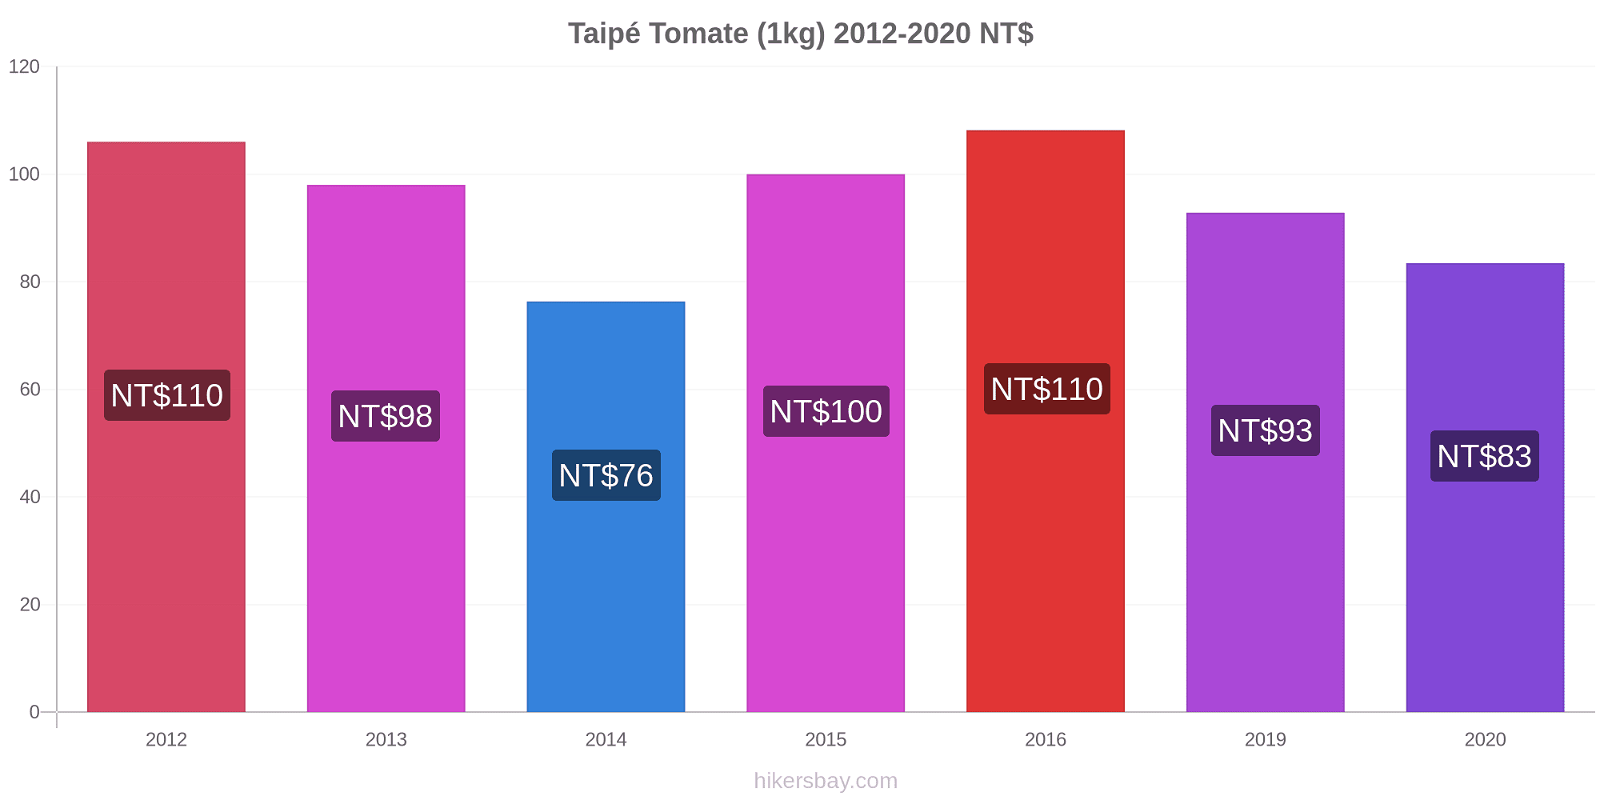 Taipé variação de preço Tomate (1kg) hikersbay.com